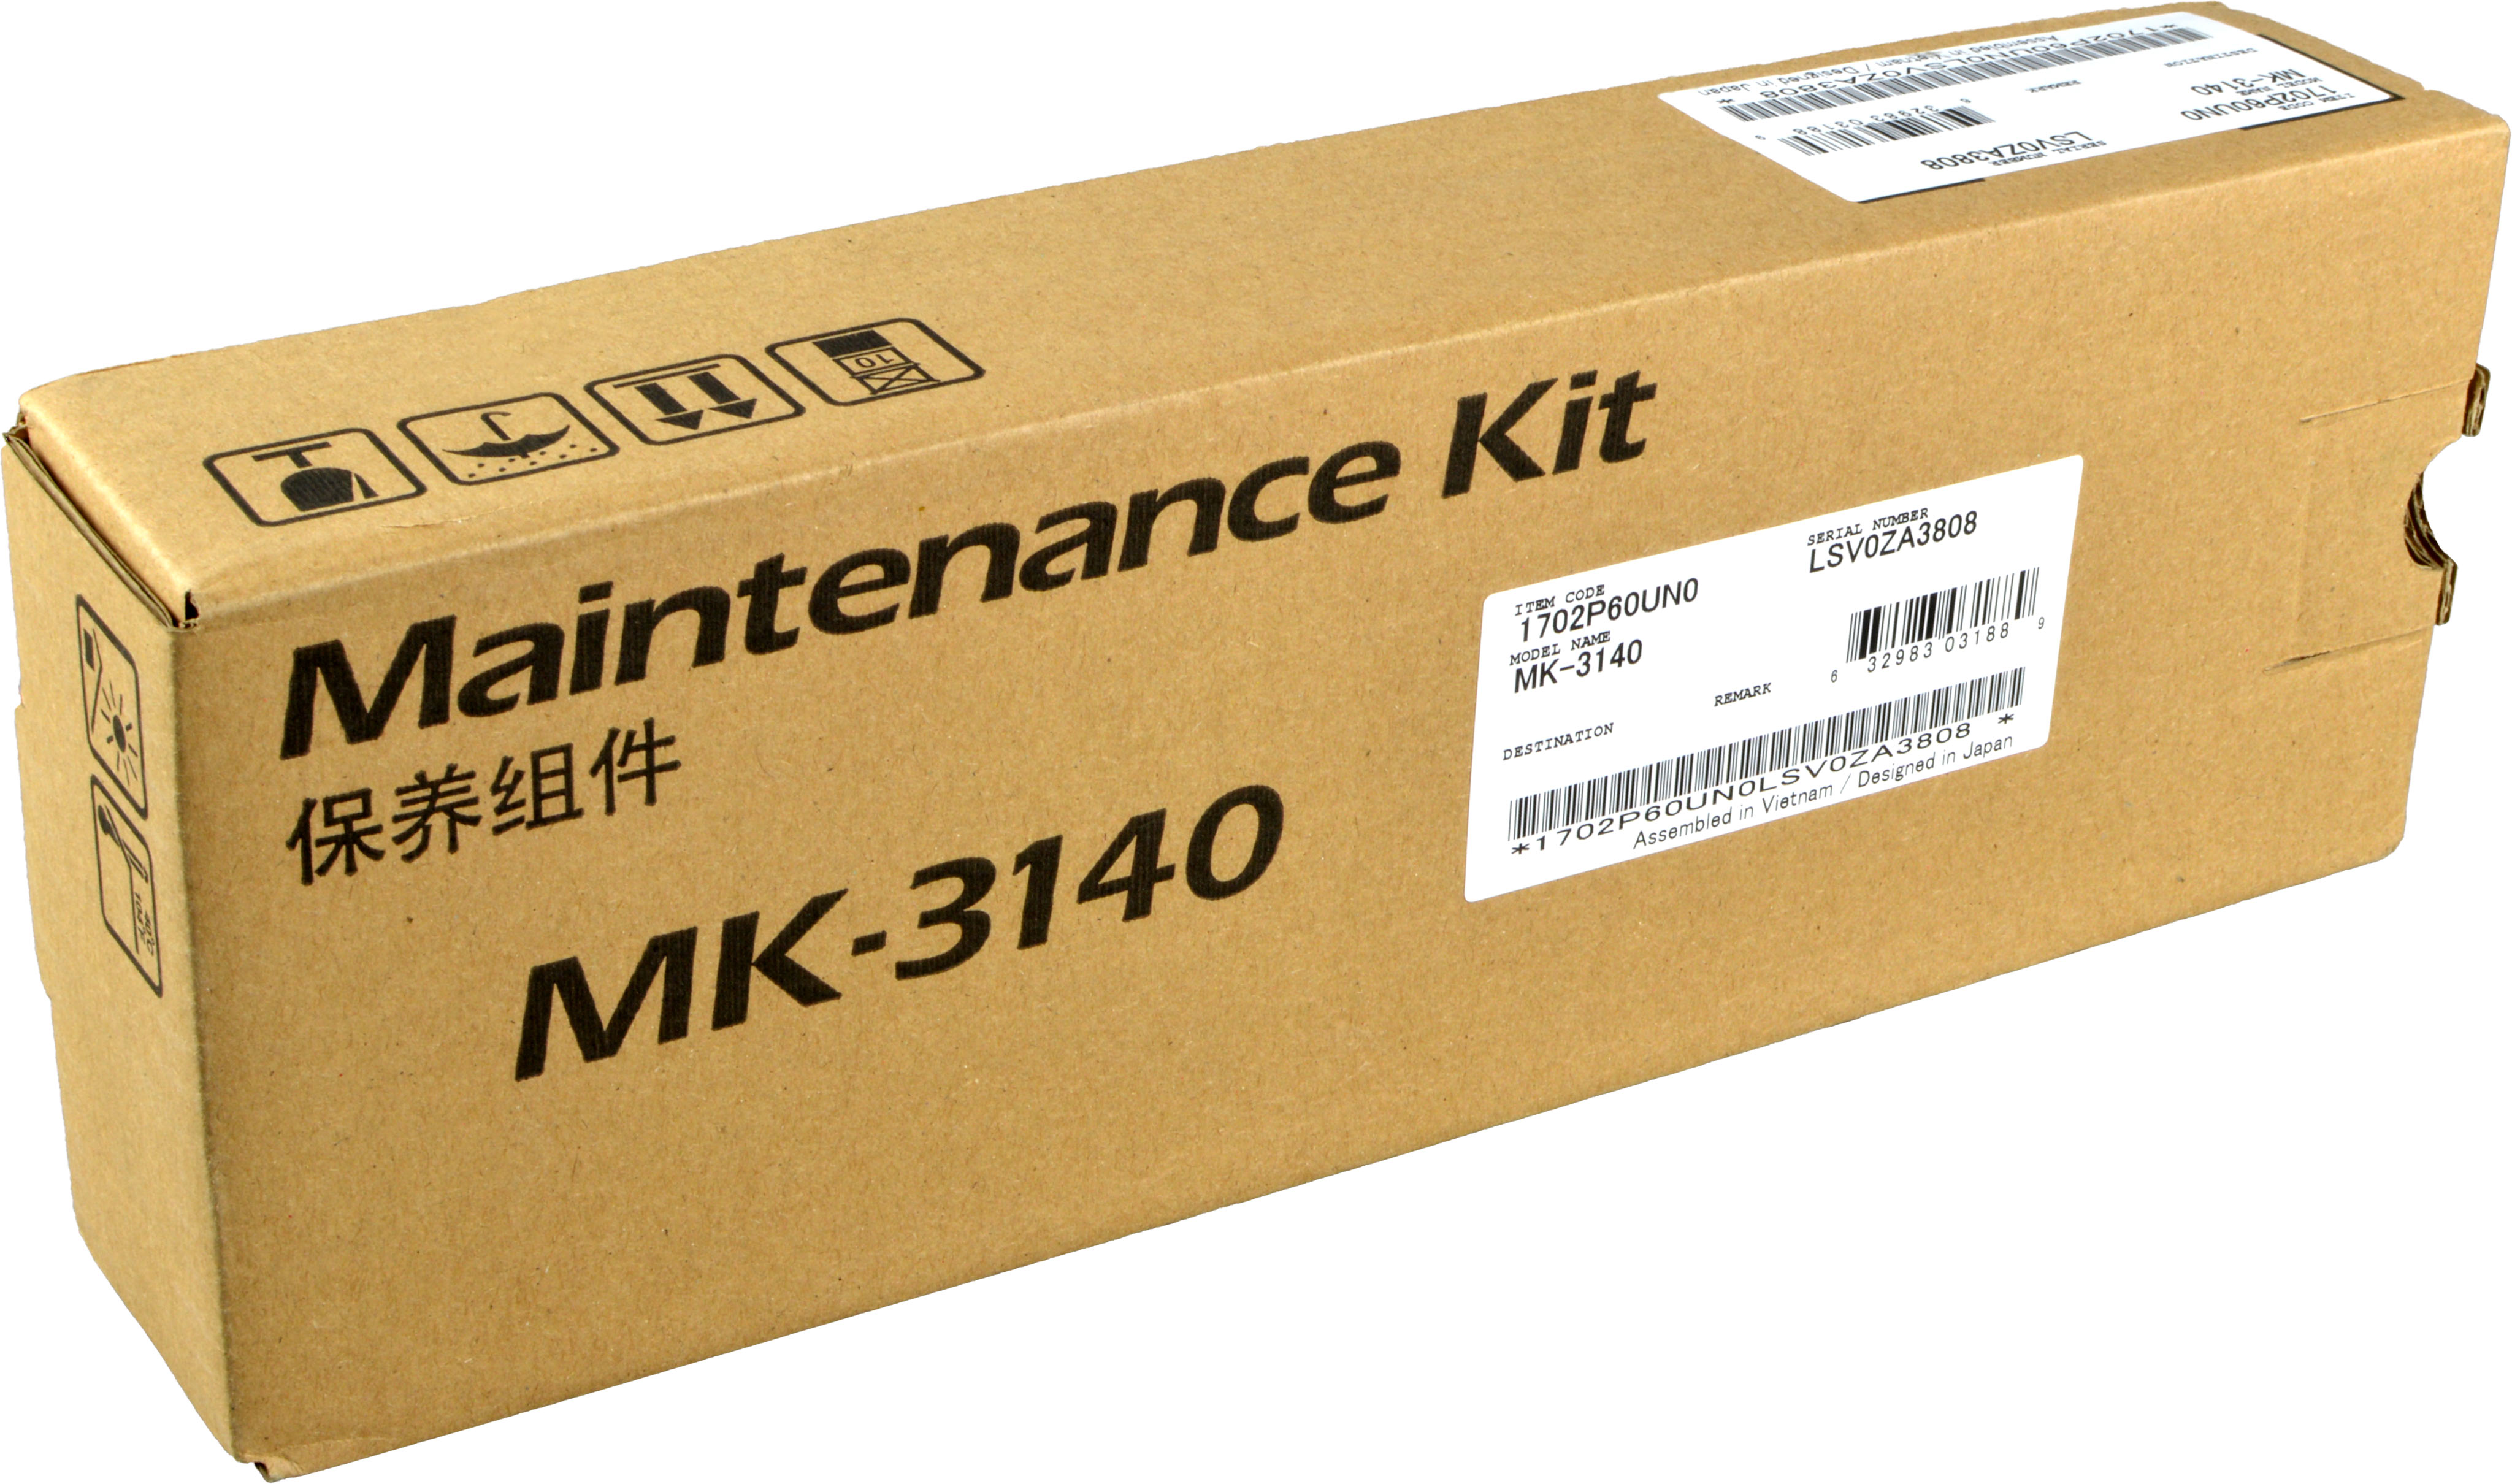 Kyocera Maintenance Kit MK-3140  1702P60UN0  für ADF